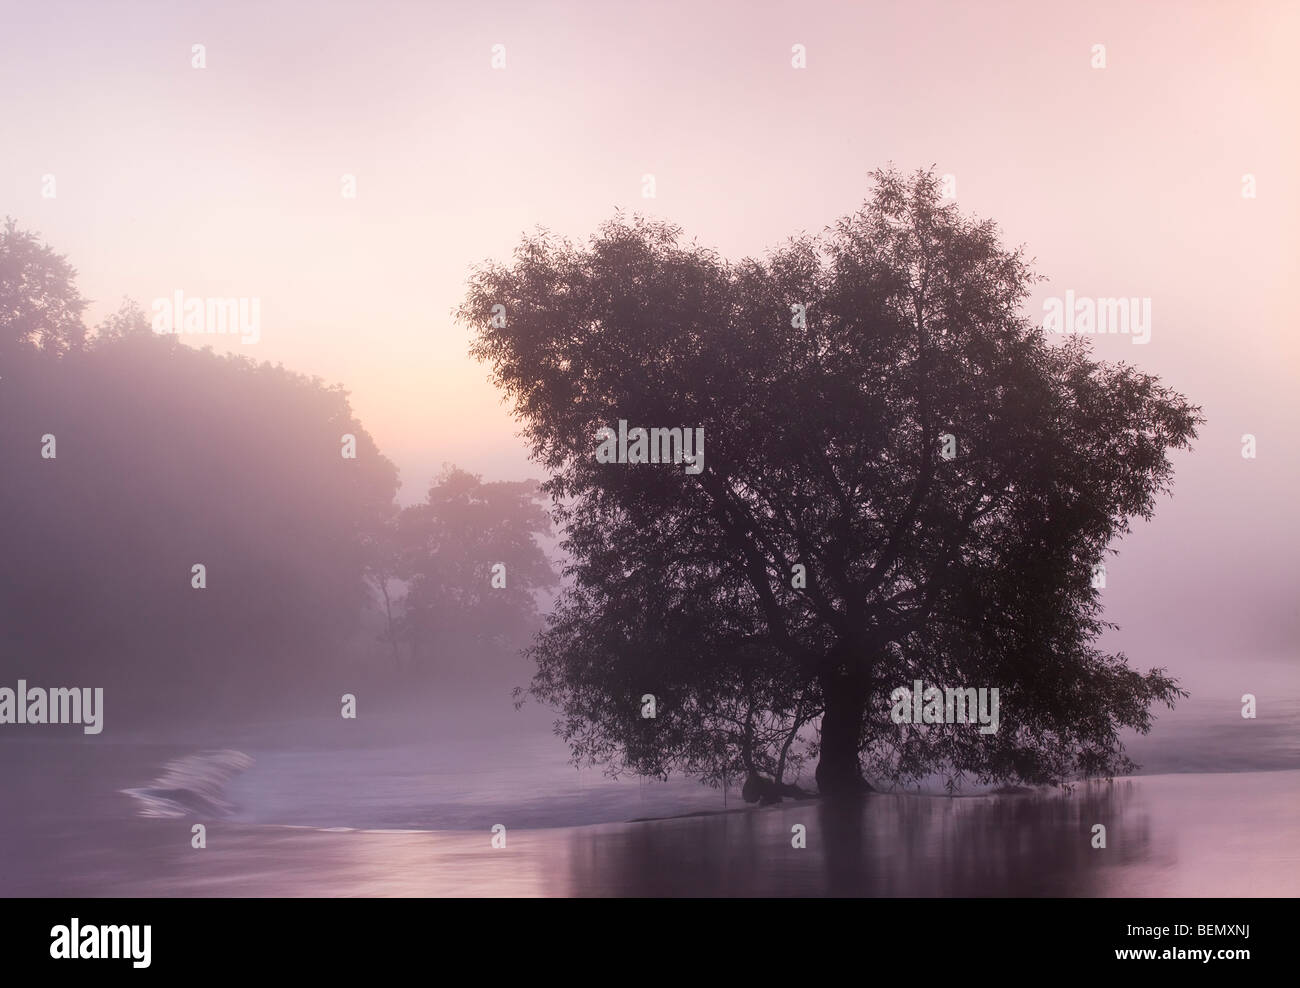 Un arbre représenté parmi la brume à l'aube sur la rivière Boyne - comté de Meath Irlande Banque D'Images